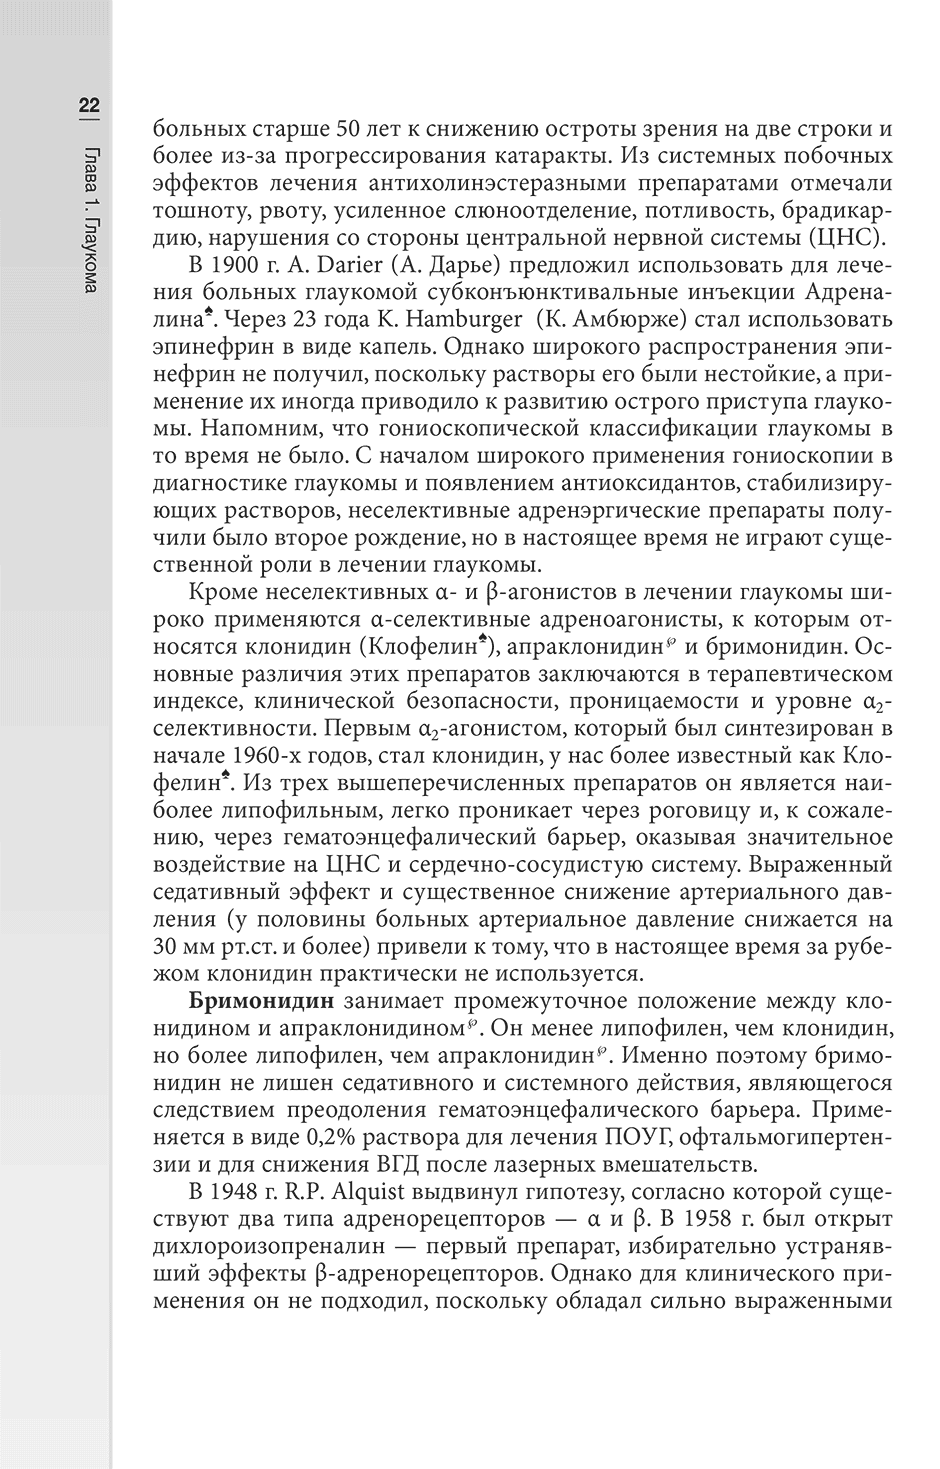 Пример страницы из книги "Гериатрическая офтальмология: руководство для врачей" - Лаптева Е. С.